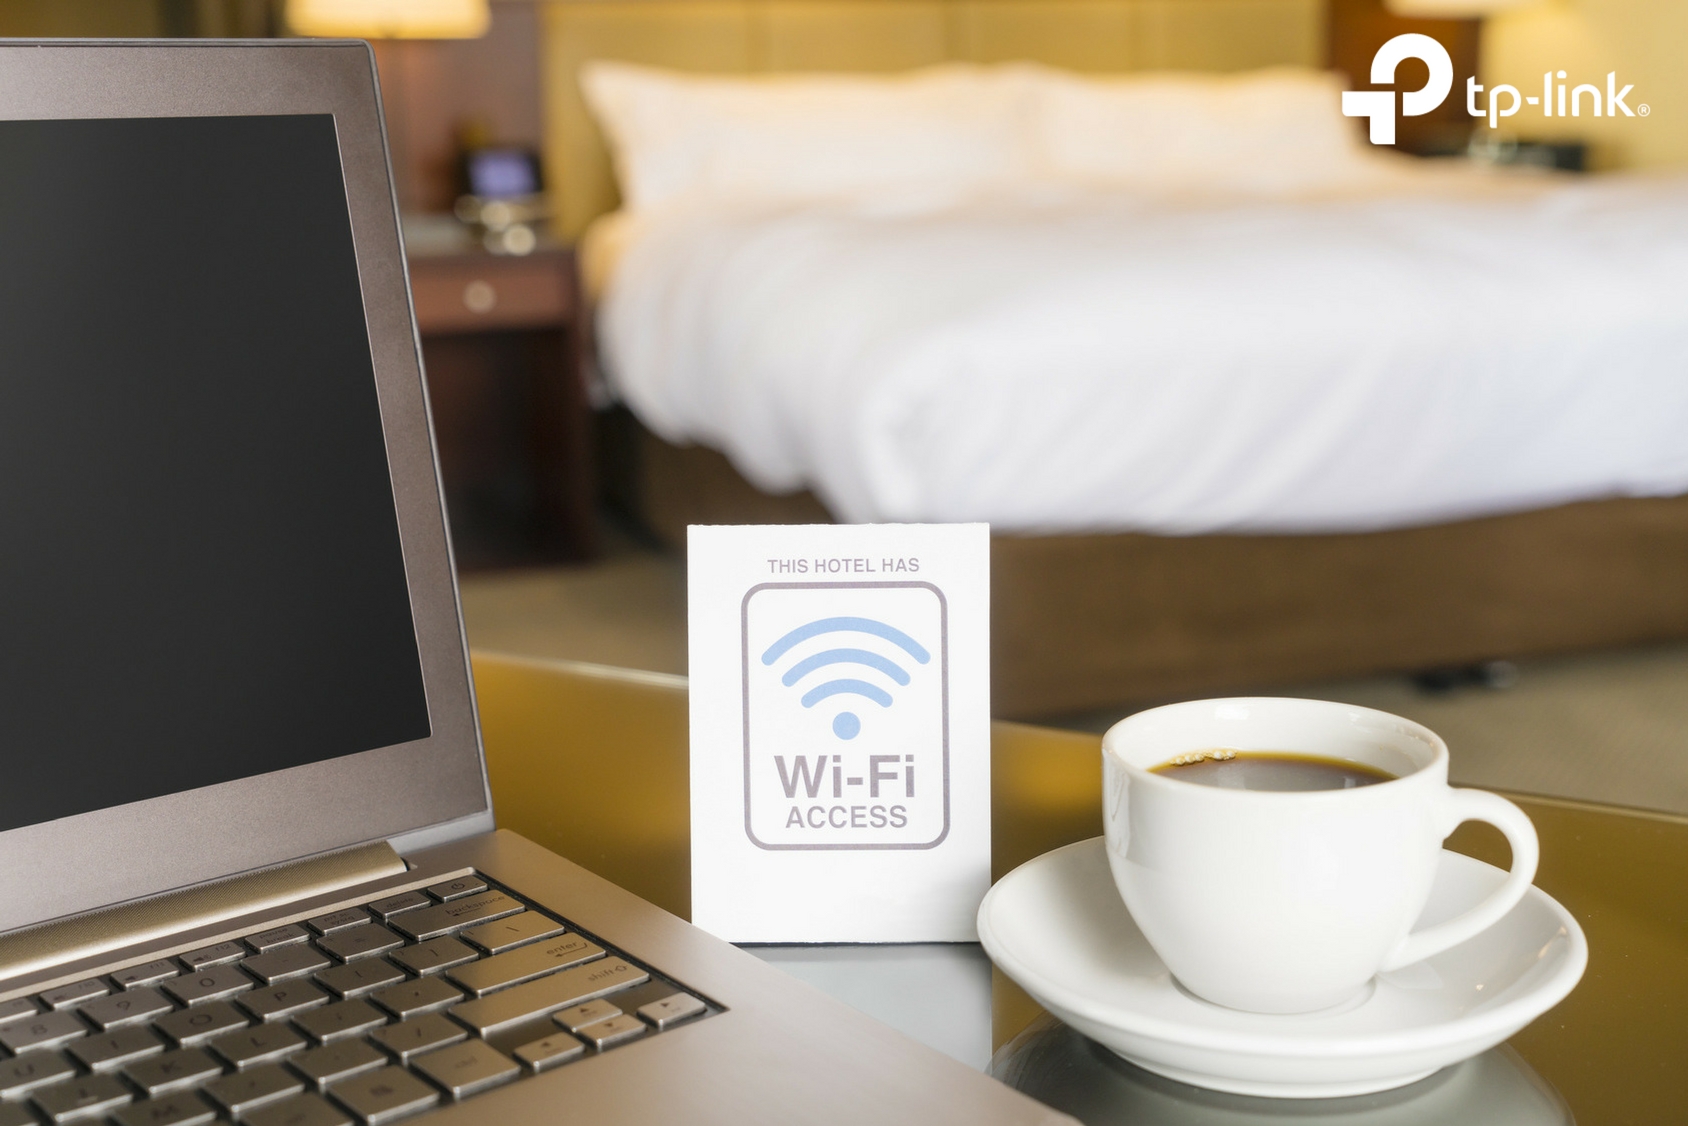 La demanda de Wi-Fi gratuito dispara la vulnerabilidad del usuario